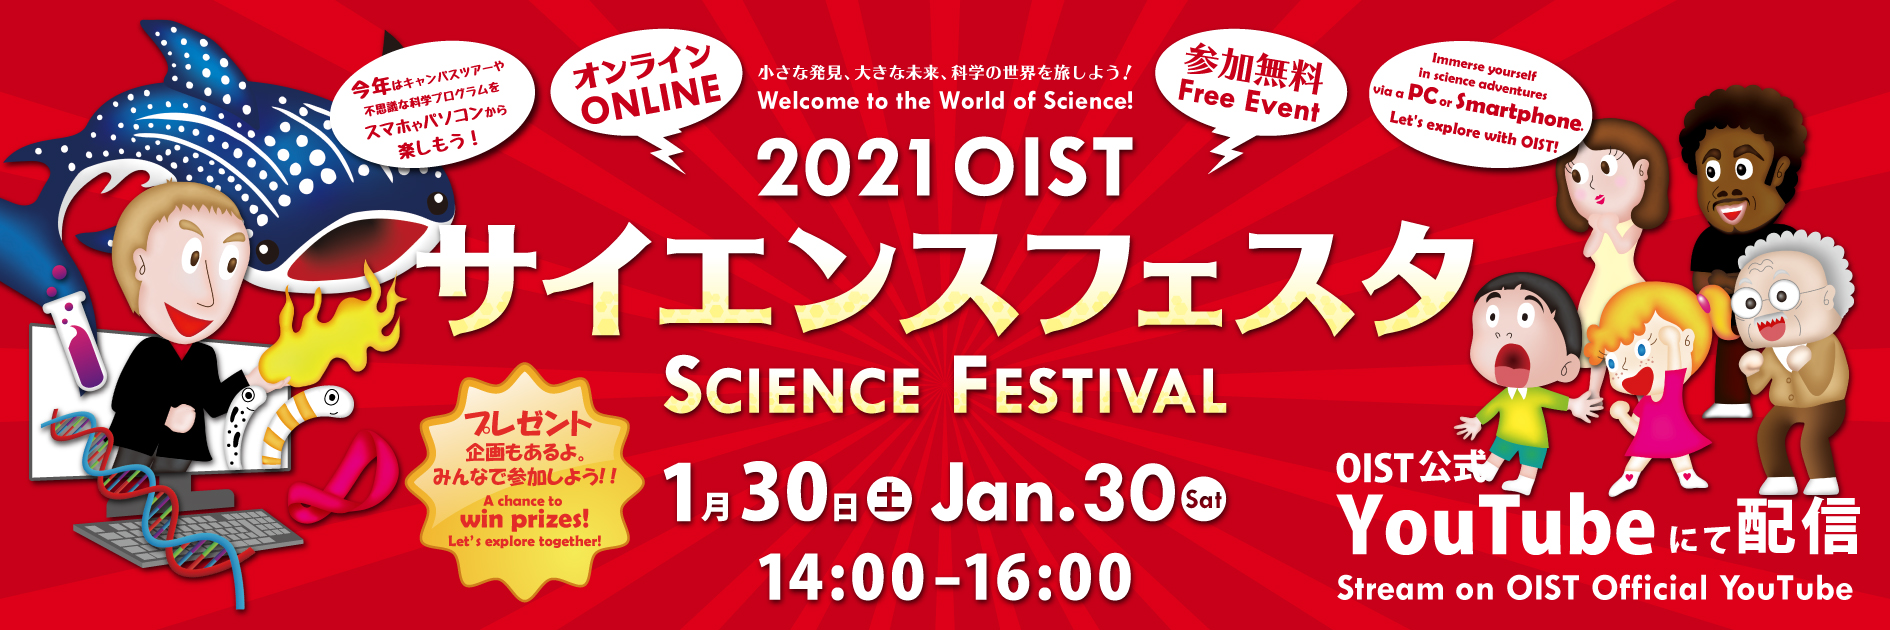 Science Festival 2021 banner